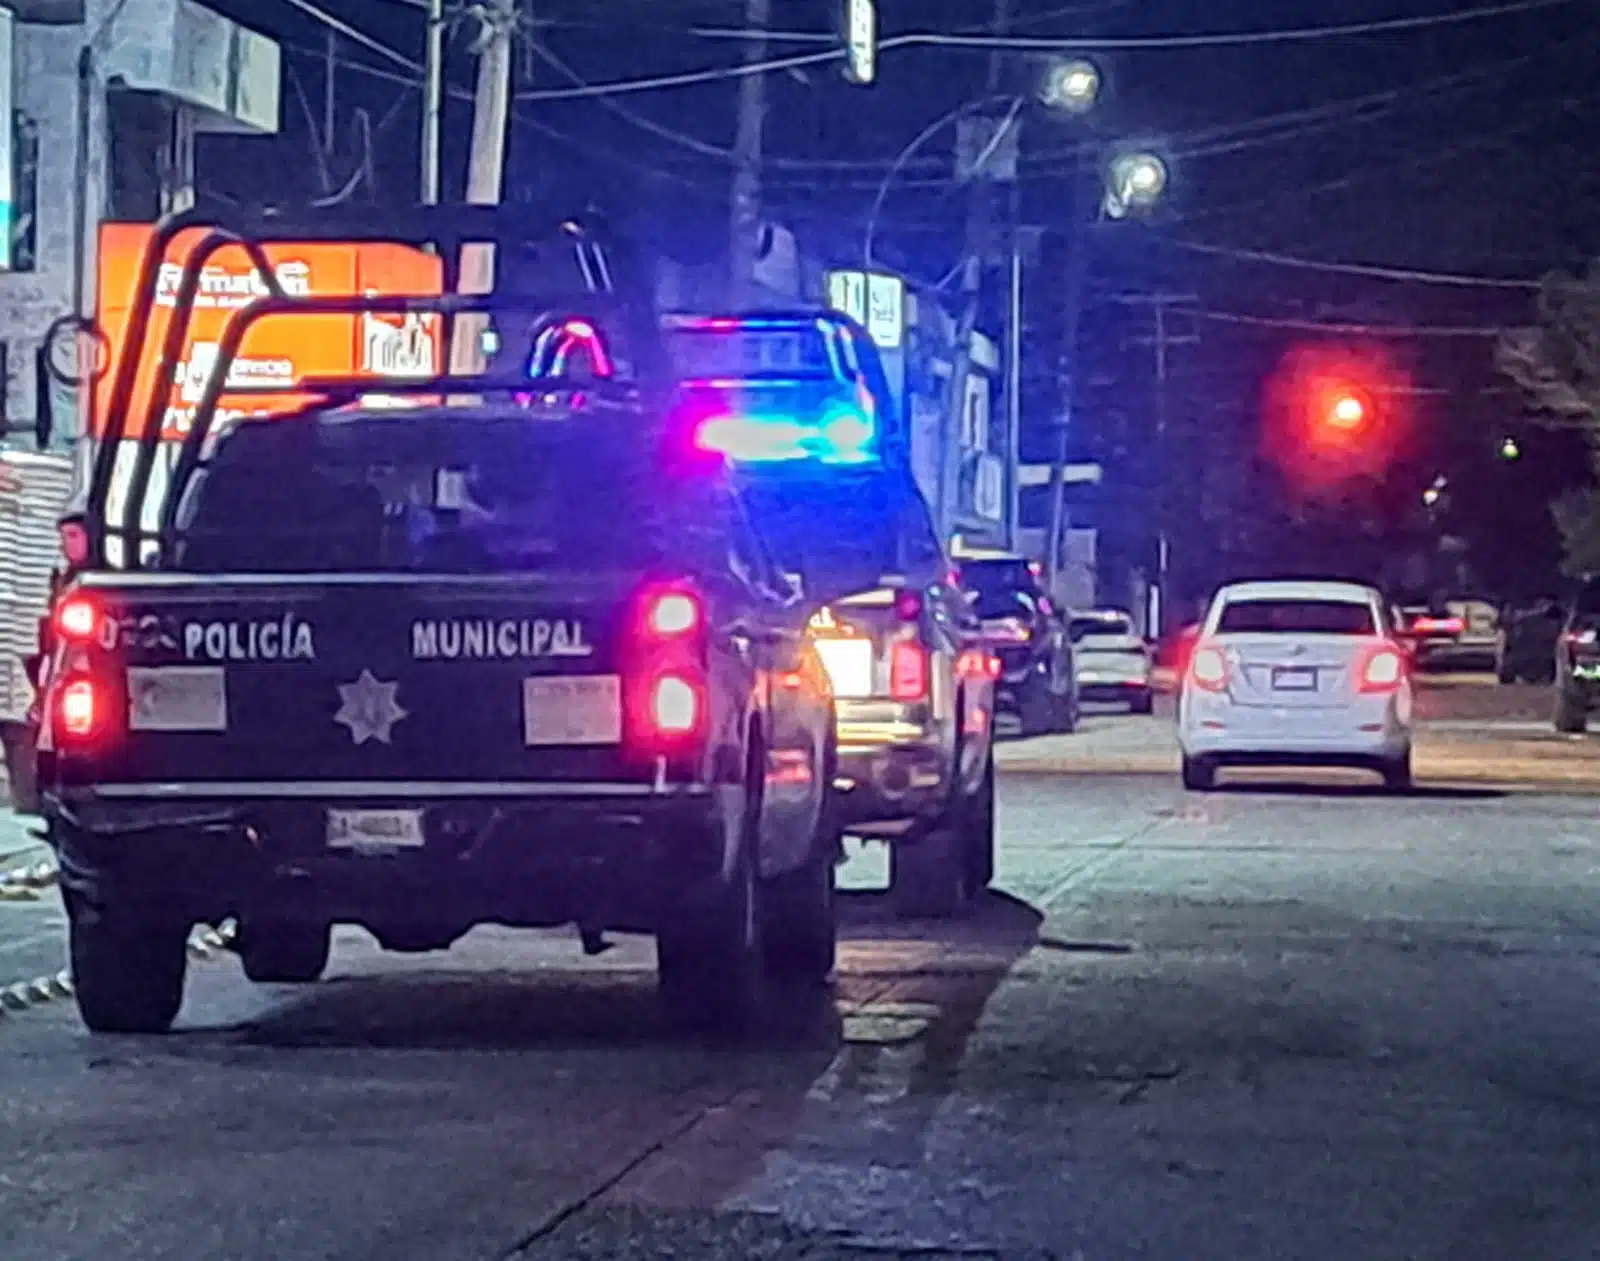 Patrullas de la Policía Municipal durante recorrido de noche en Culiacán